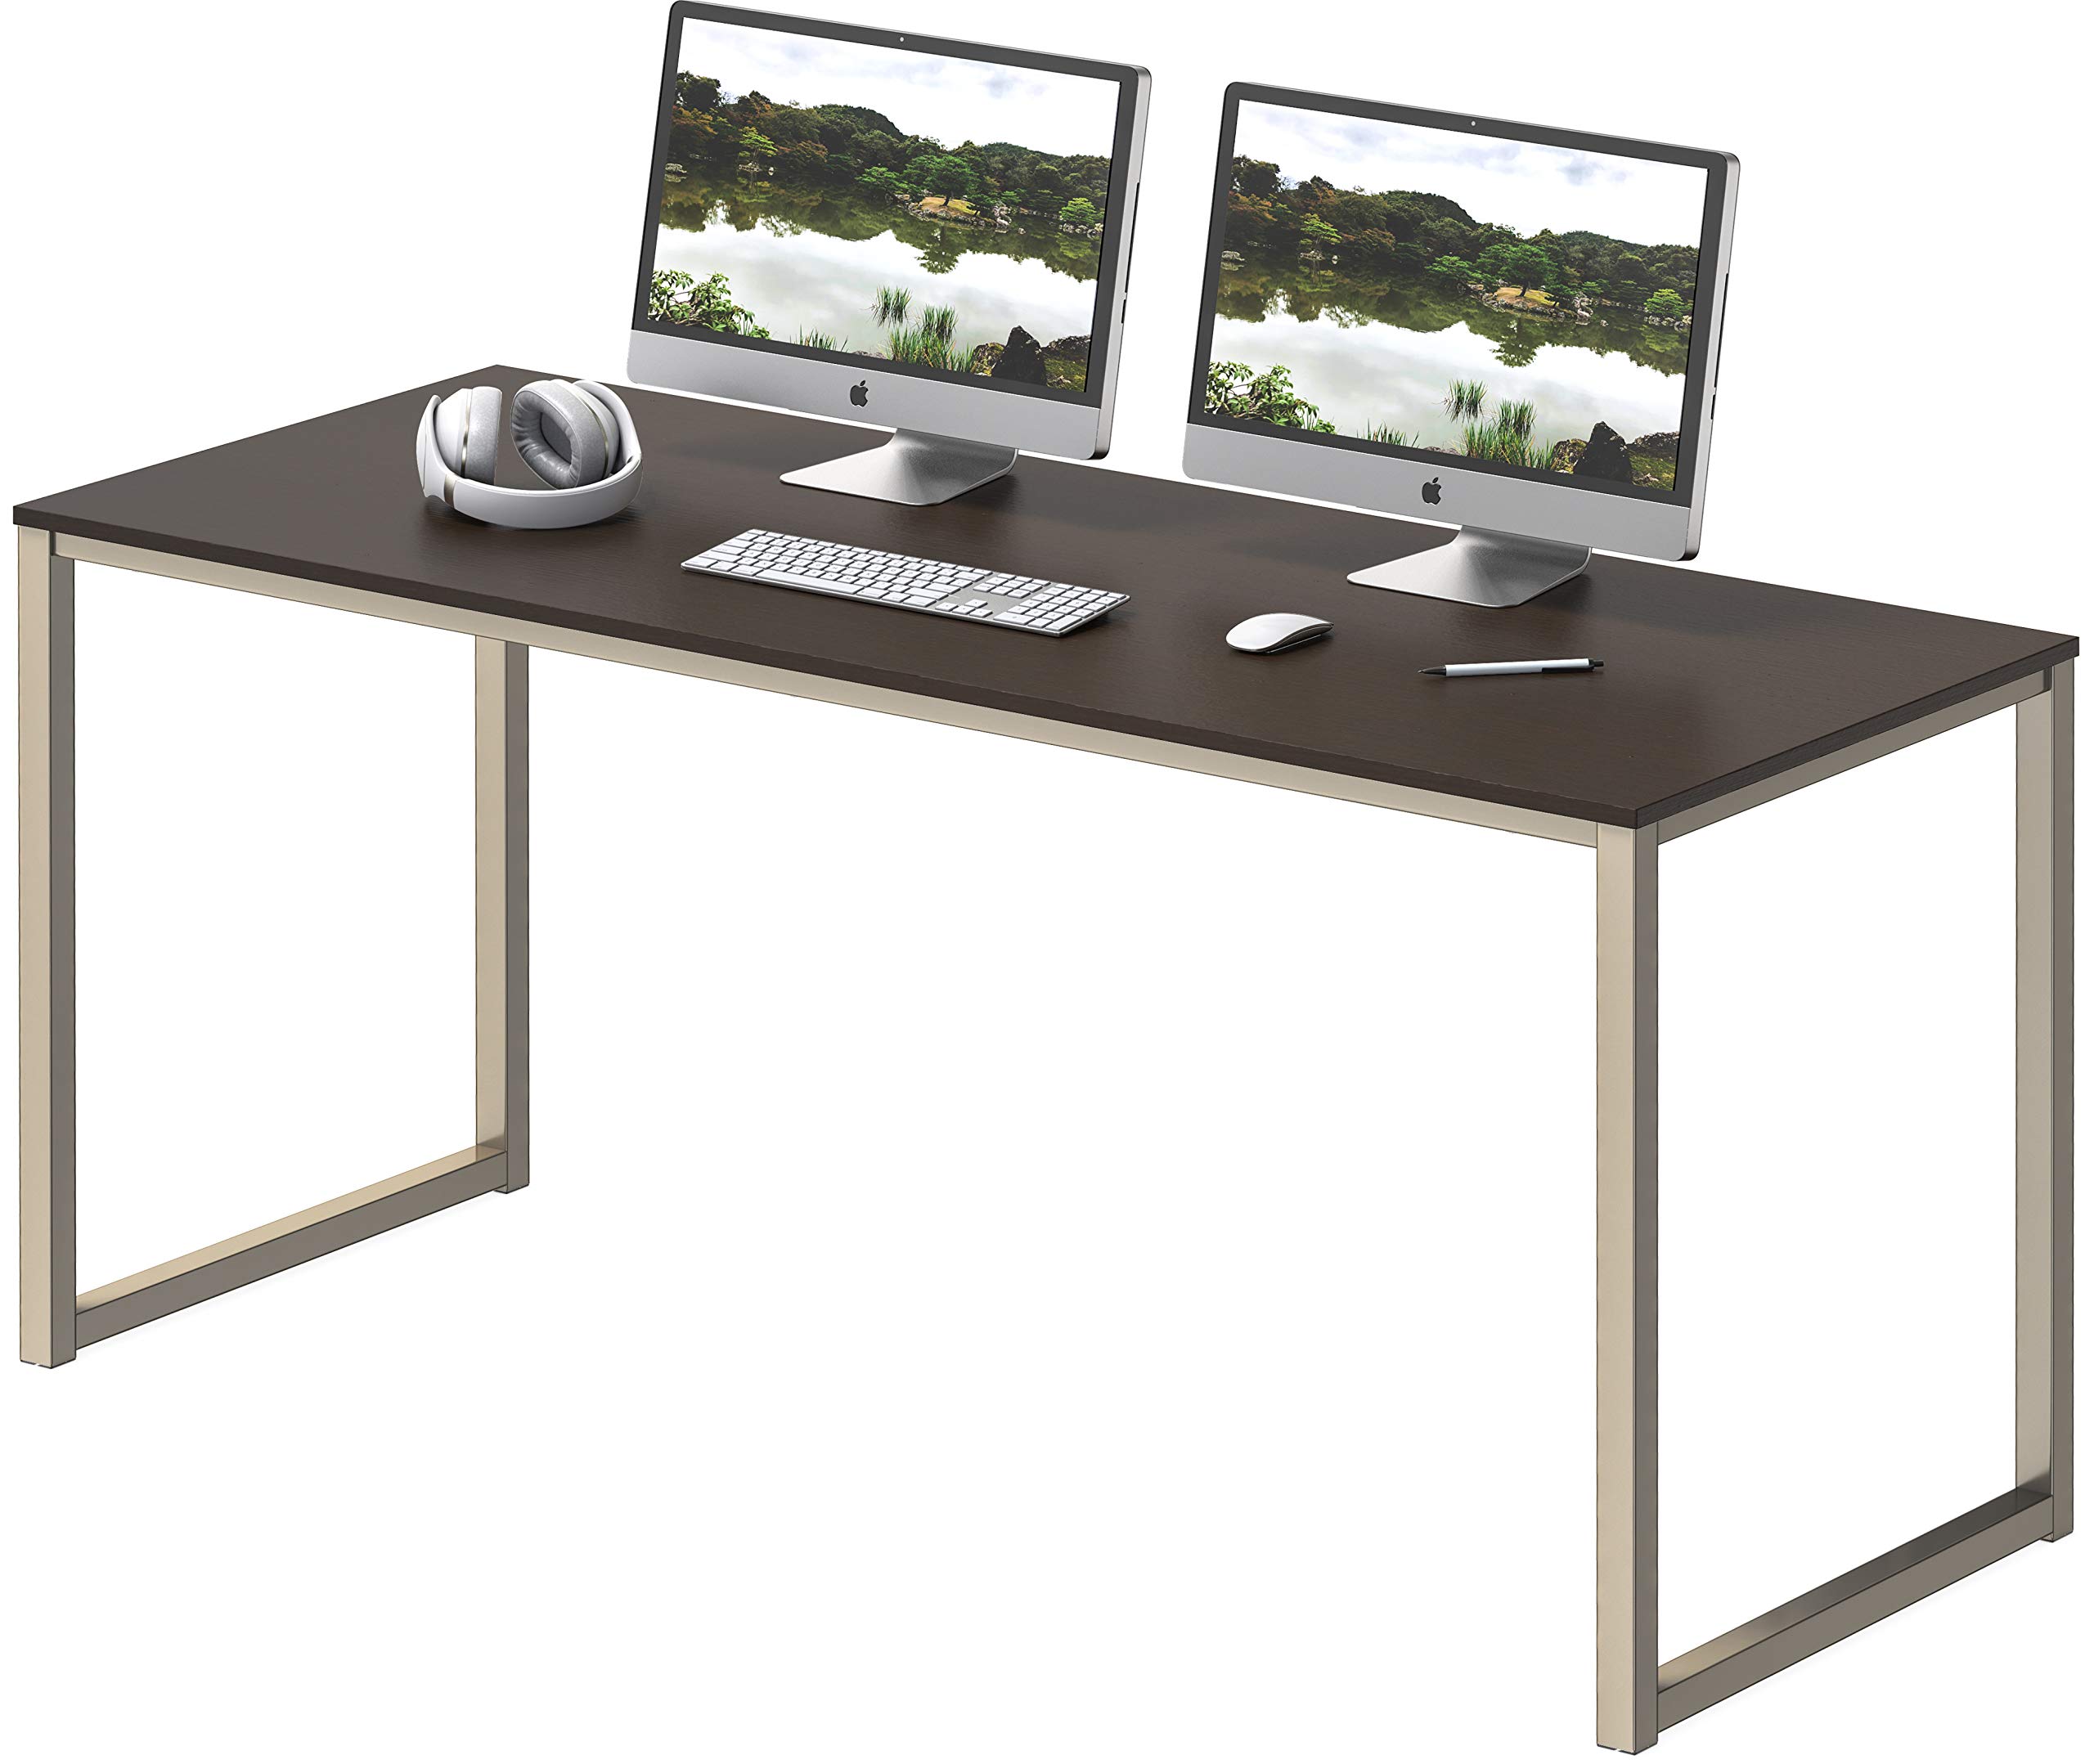 Shw Home Office 48-Inch Computer Desk, Silverespresso